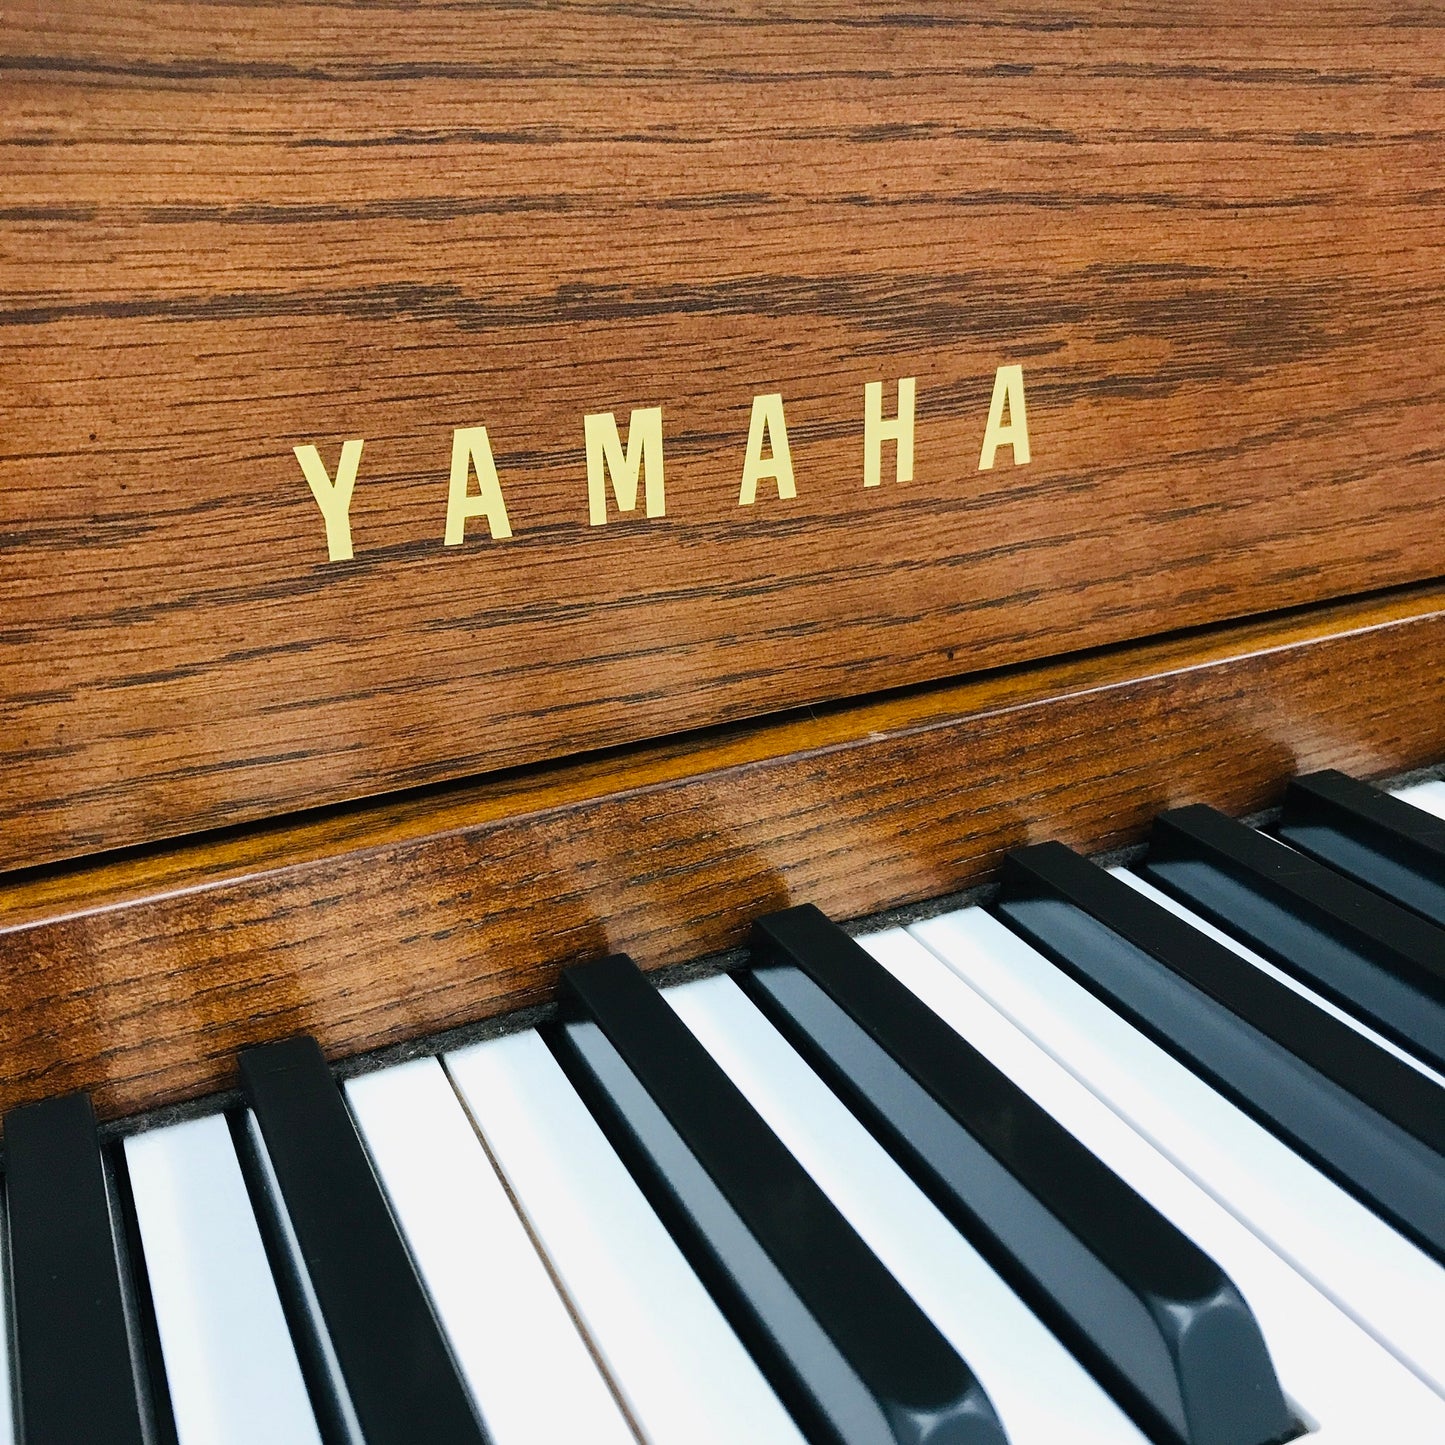 Yamaha M500 M Upright Piano